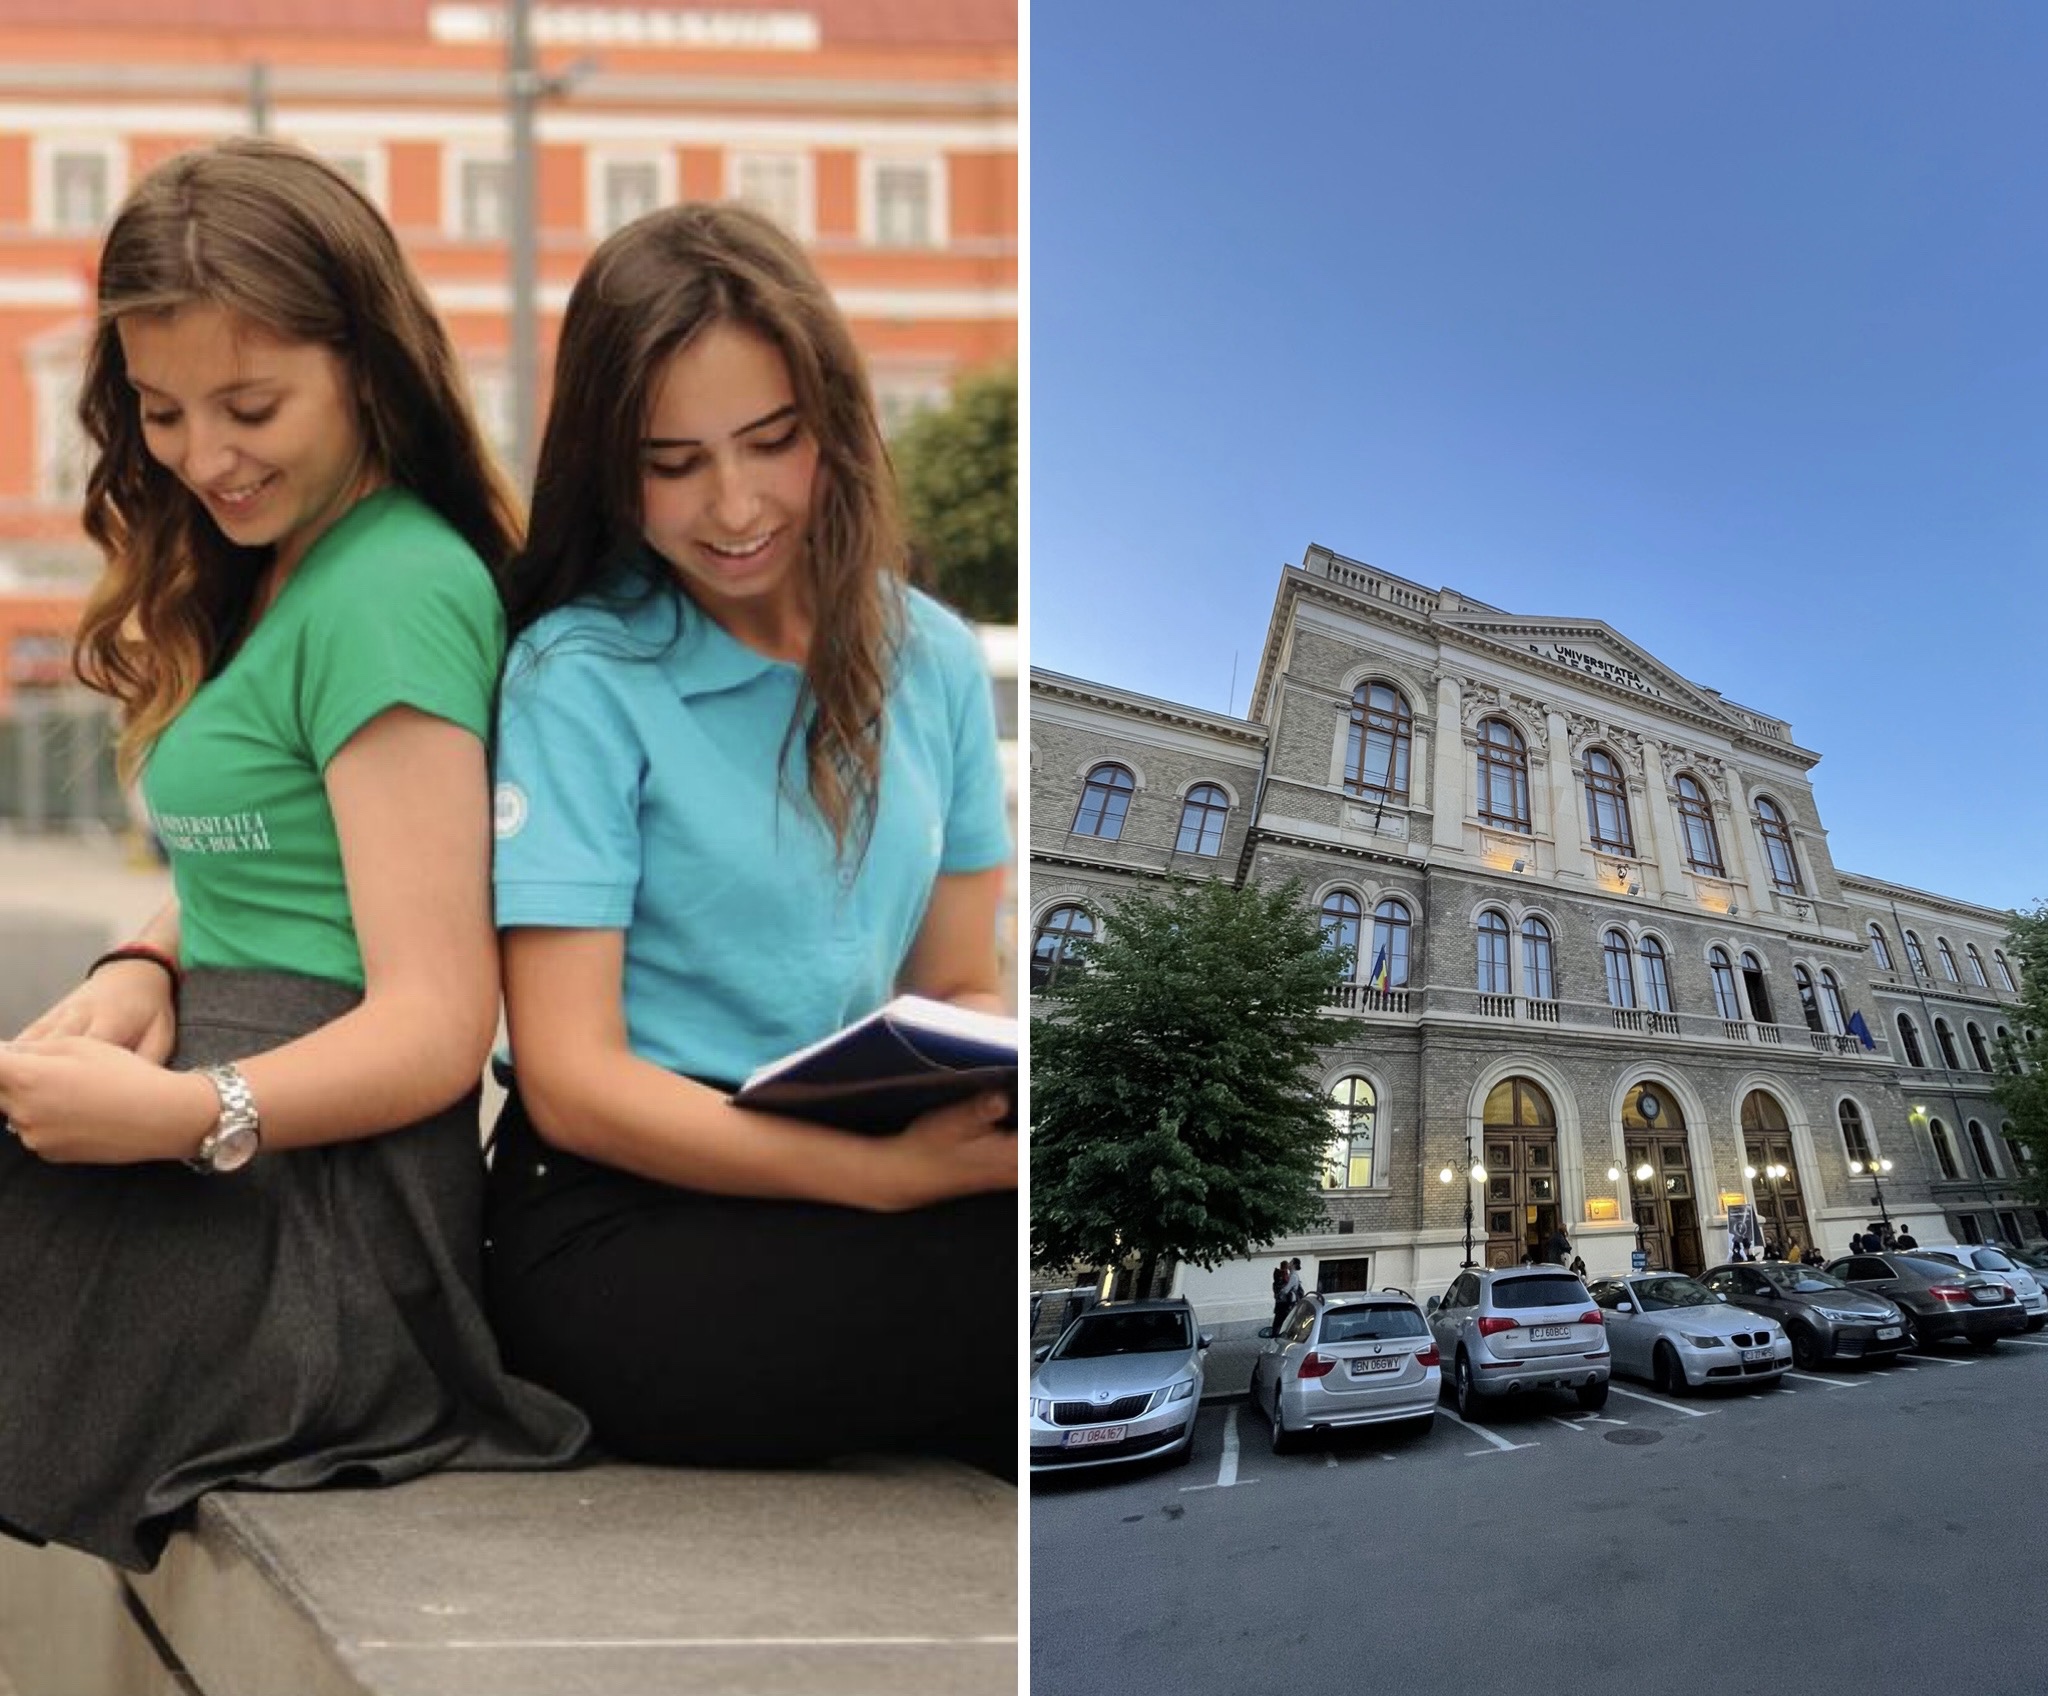 Anul universitar se deschide la Cluj-Napoca. Peste 50.000 de studenti sunt asteptati zilele acestea la Cluj